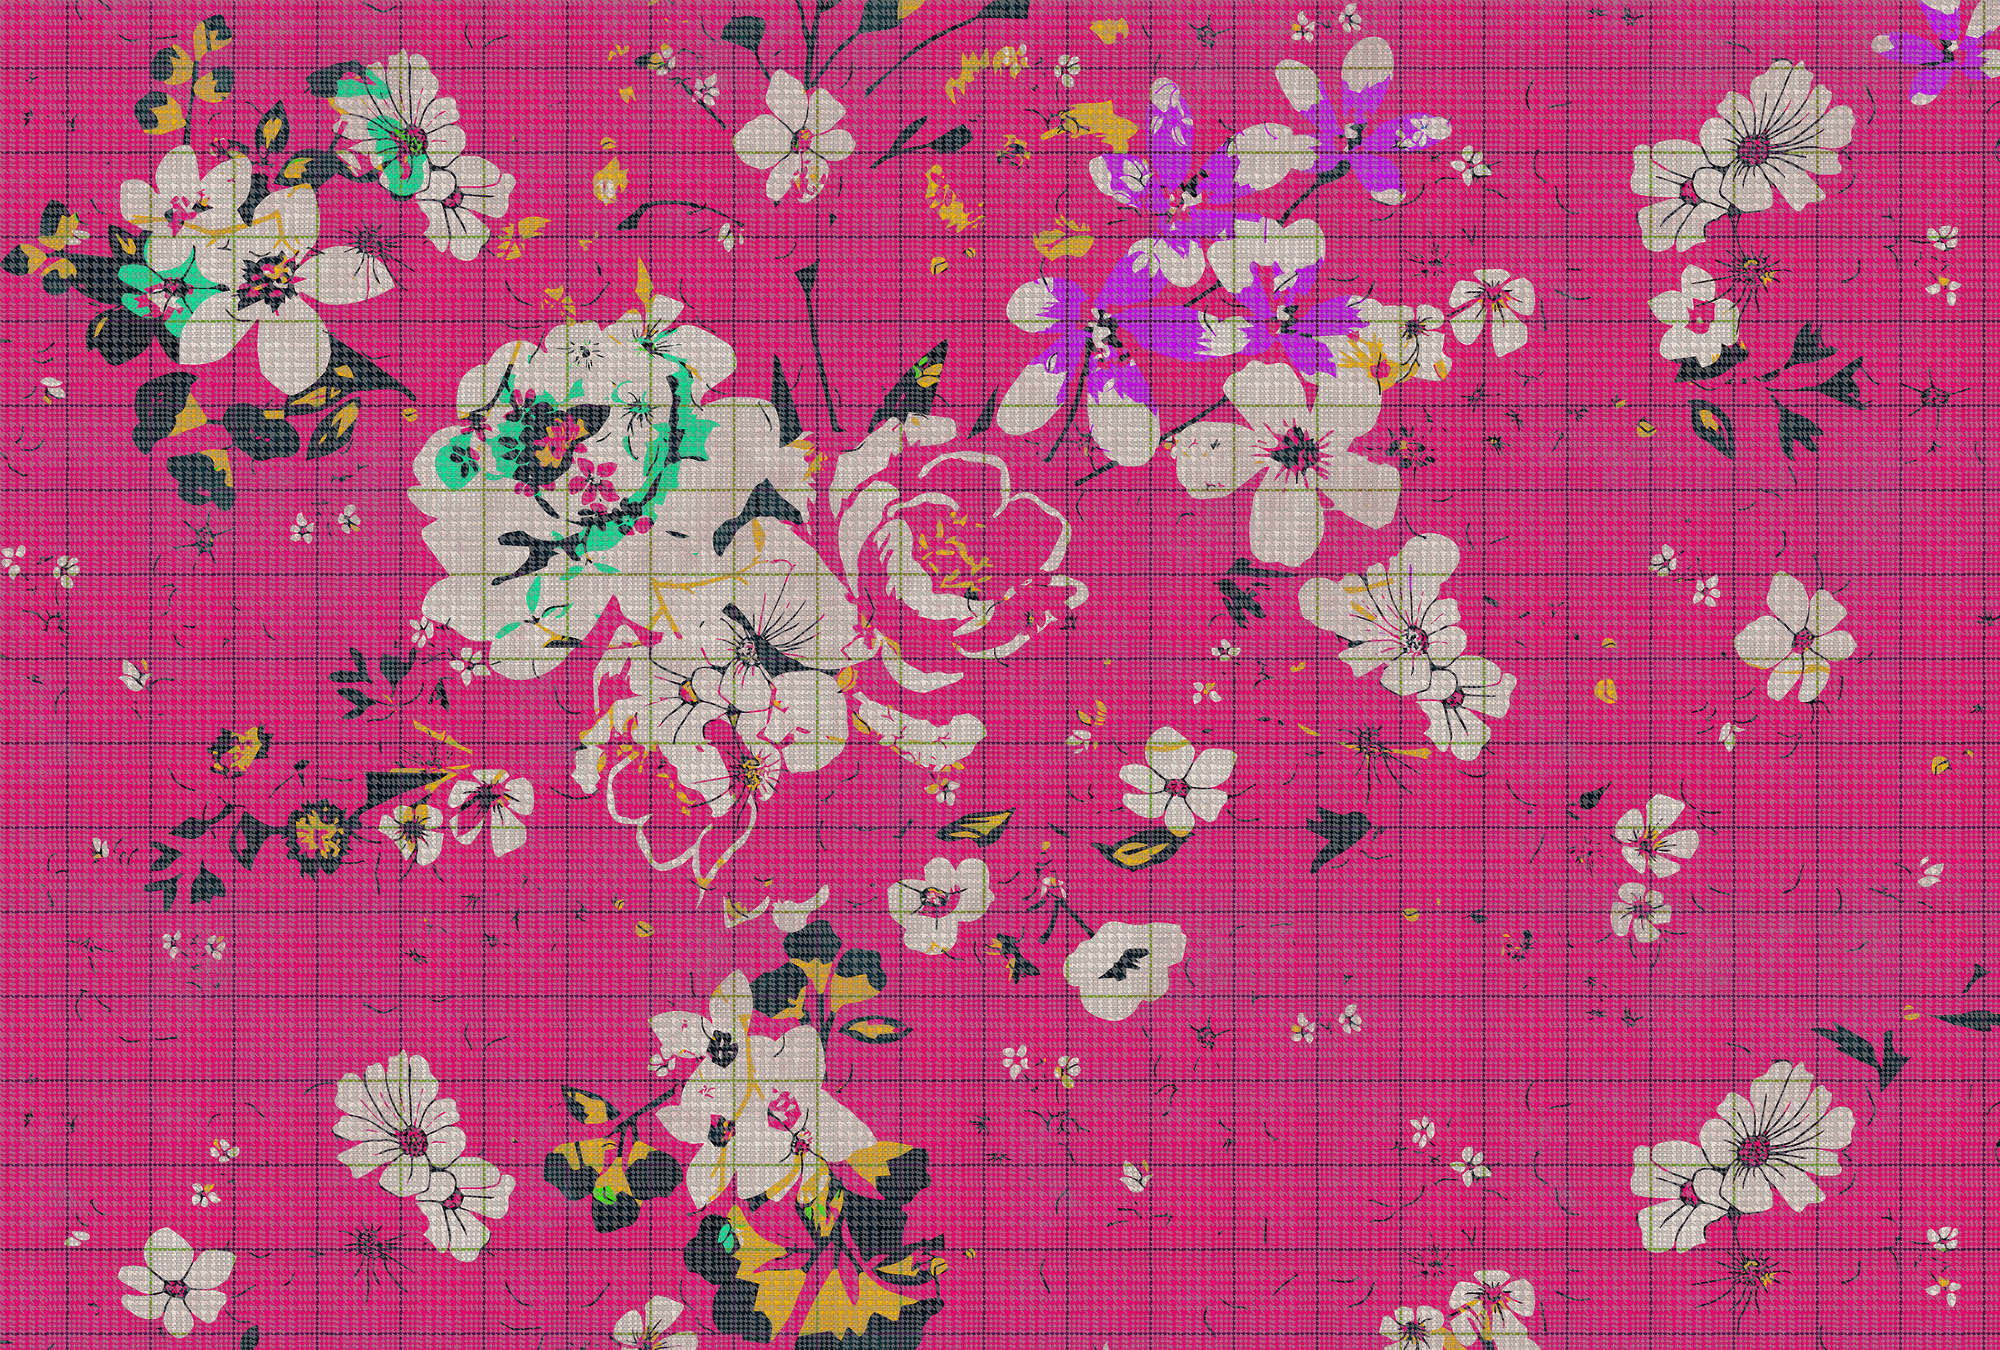             Flower plaid 2 - papier peint à carreaux mosaïque de fleurs multicolores rose - vert, rose | intissé lisse mat
        